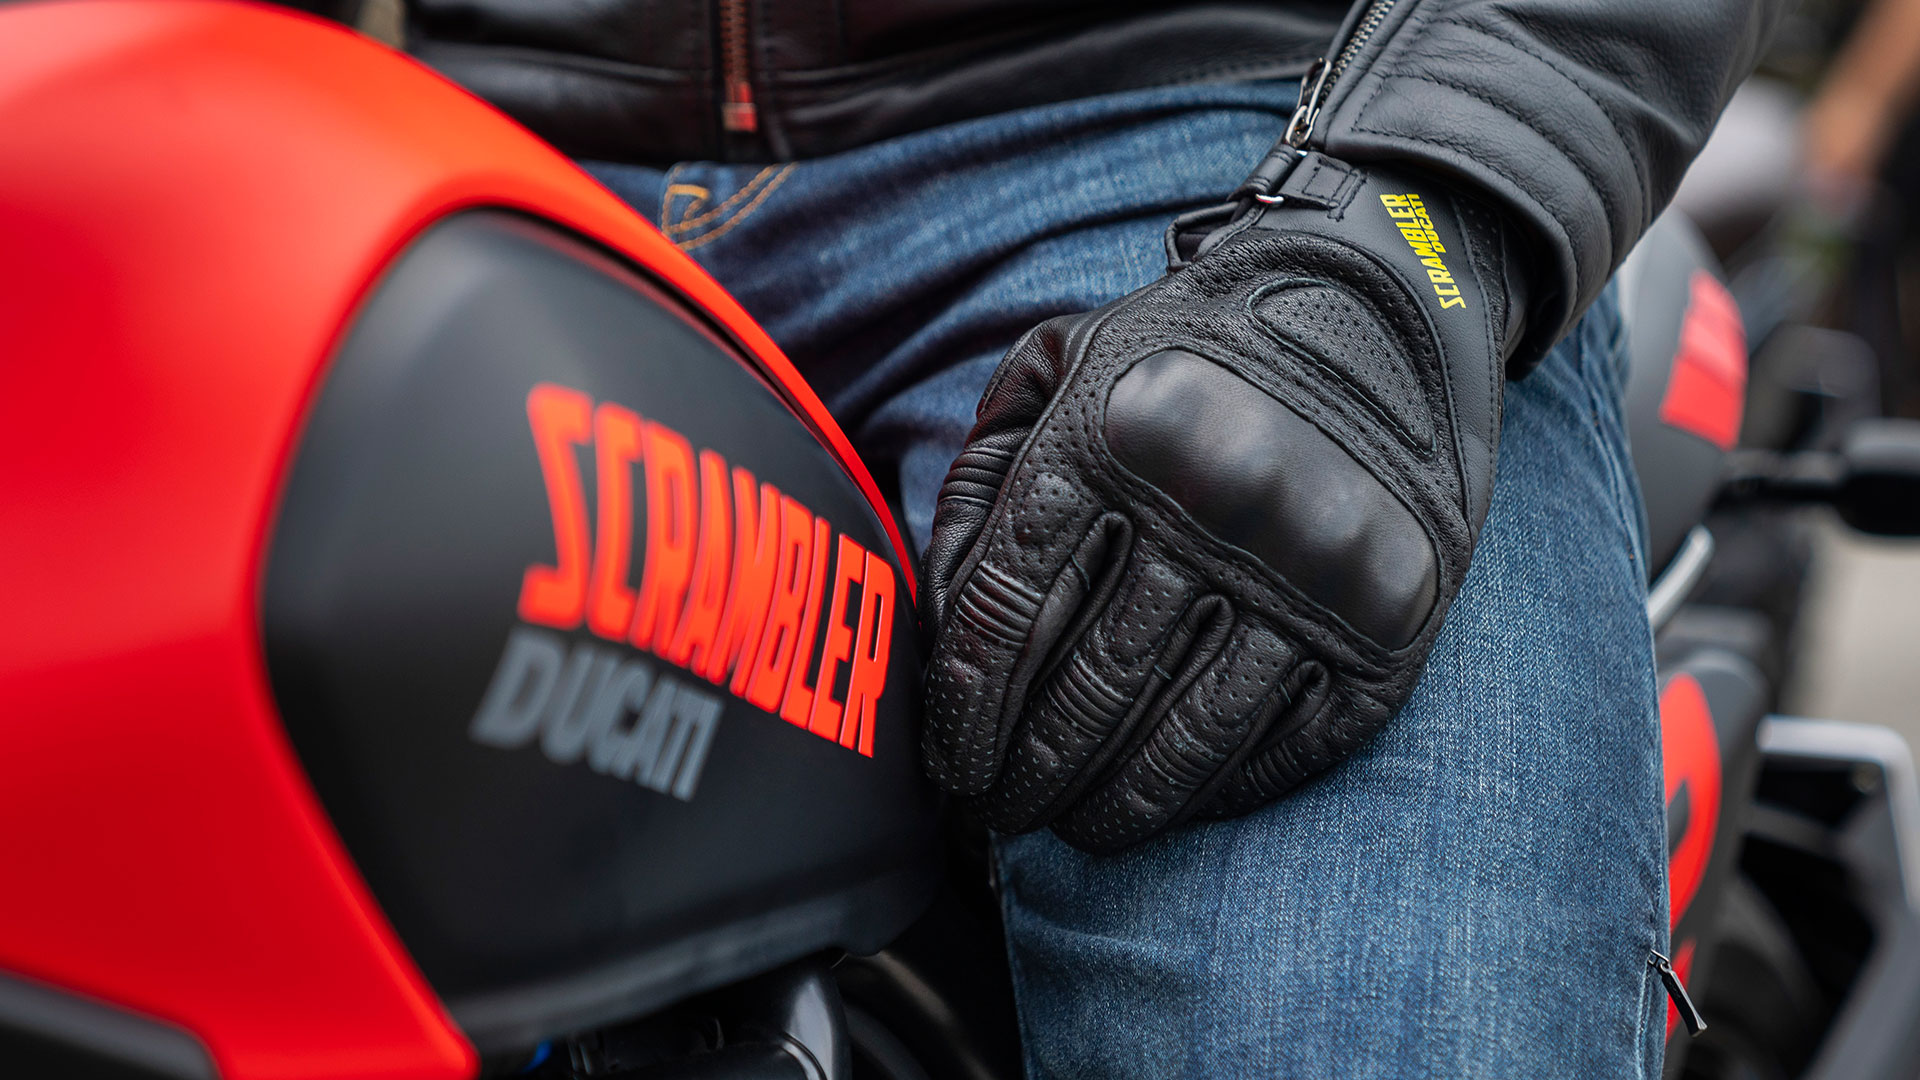 Luce con orgullo tu pasión por Scrambler Ducati: llega a las tiendas la colección de ropa